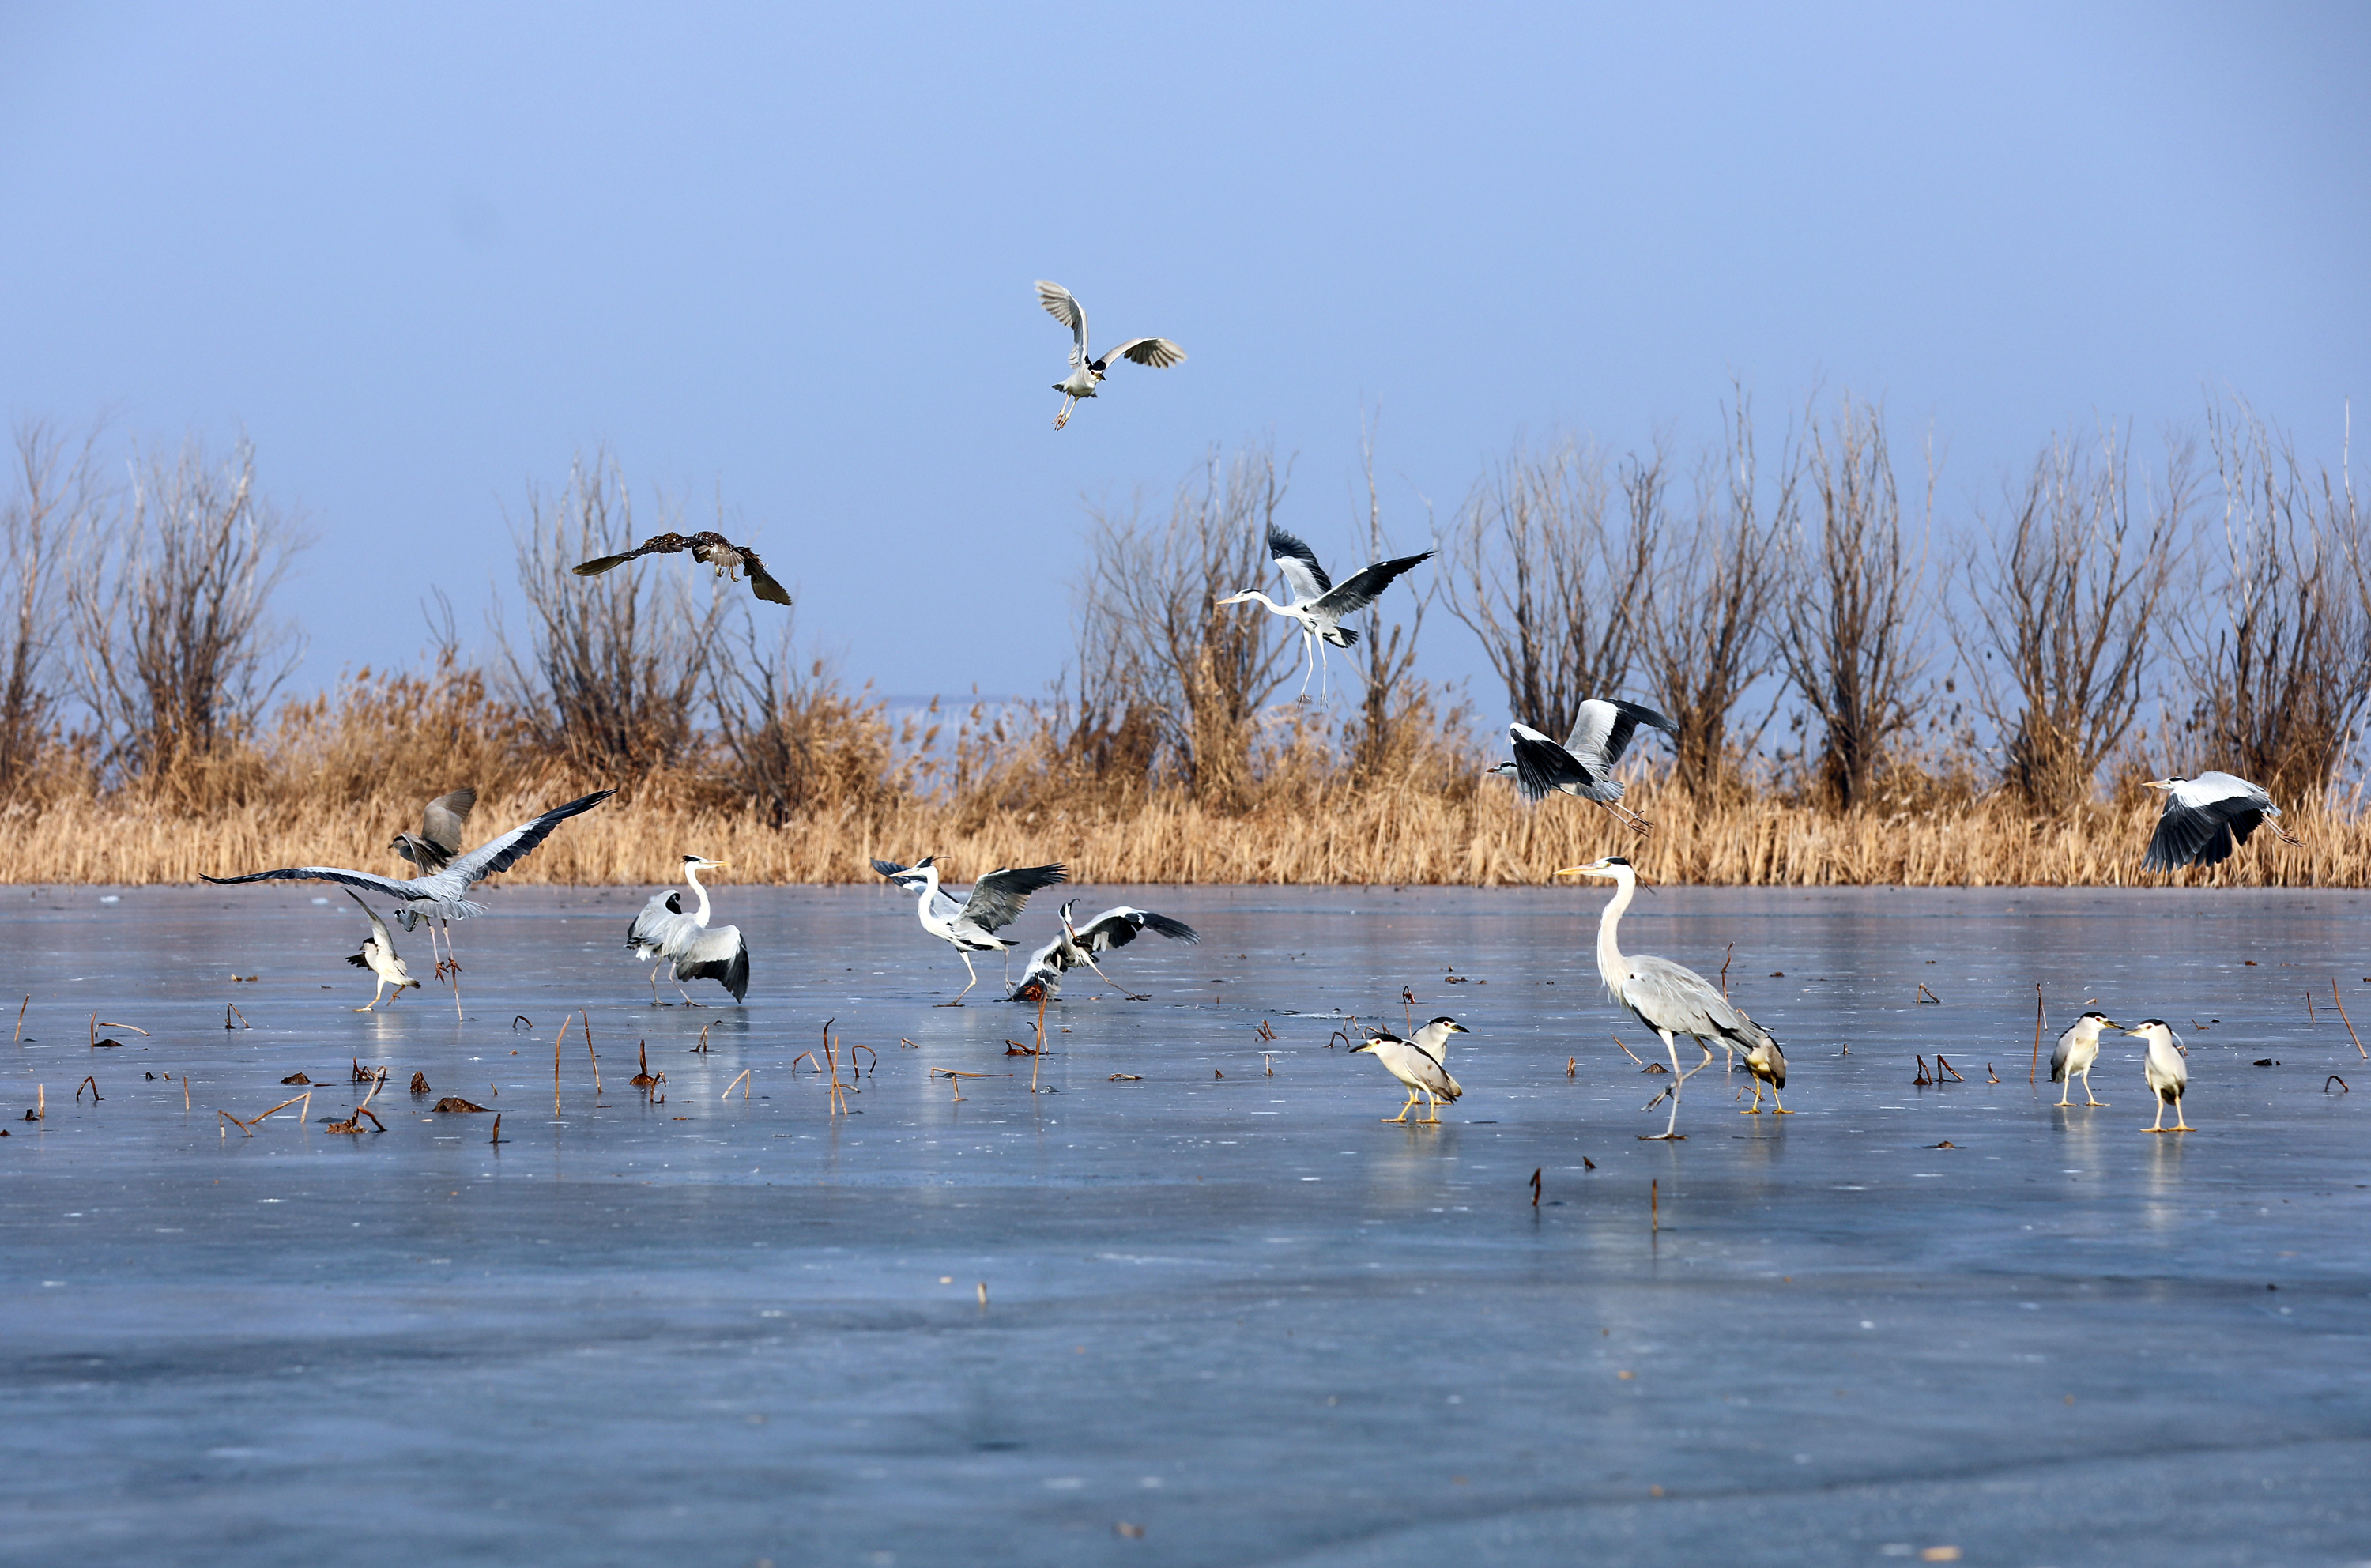 在衡水湖荷花园附近,一群鹭科鸟类在冰封的湖面上或悠闲漫步,或腾空